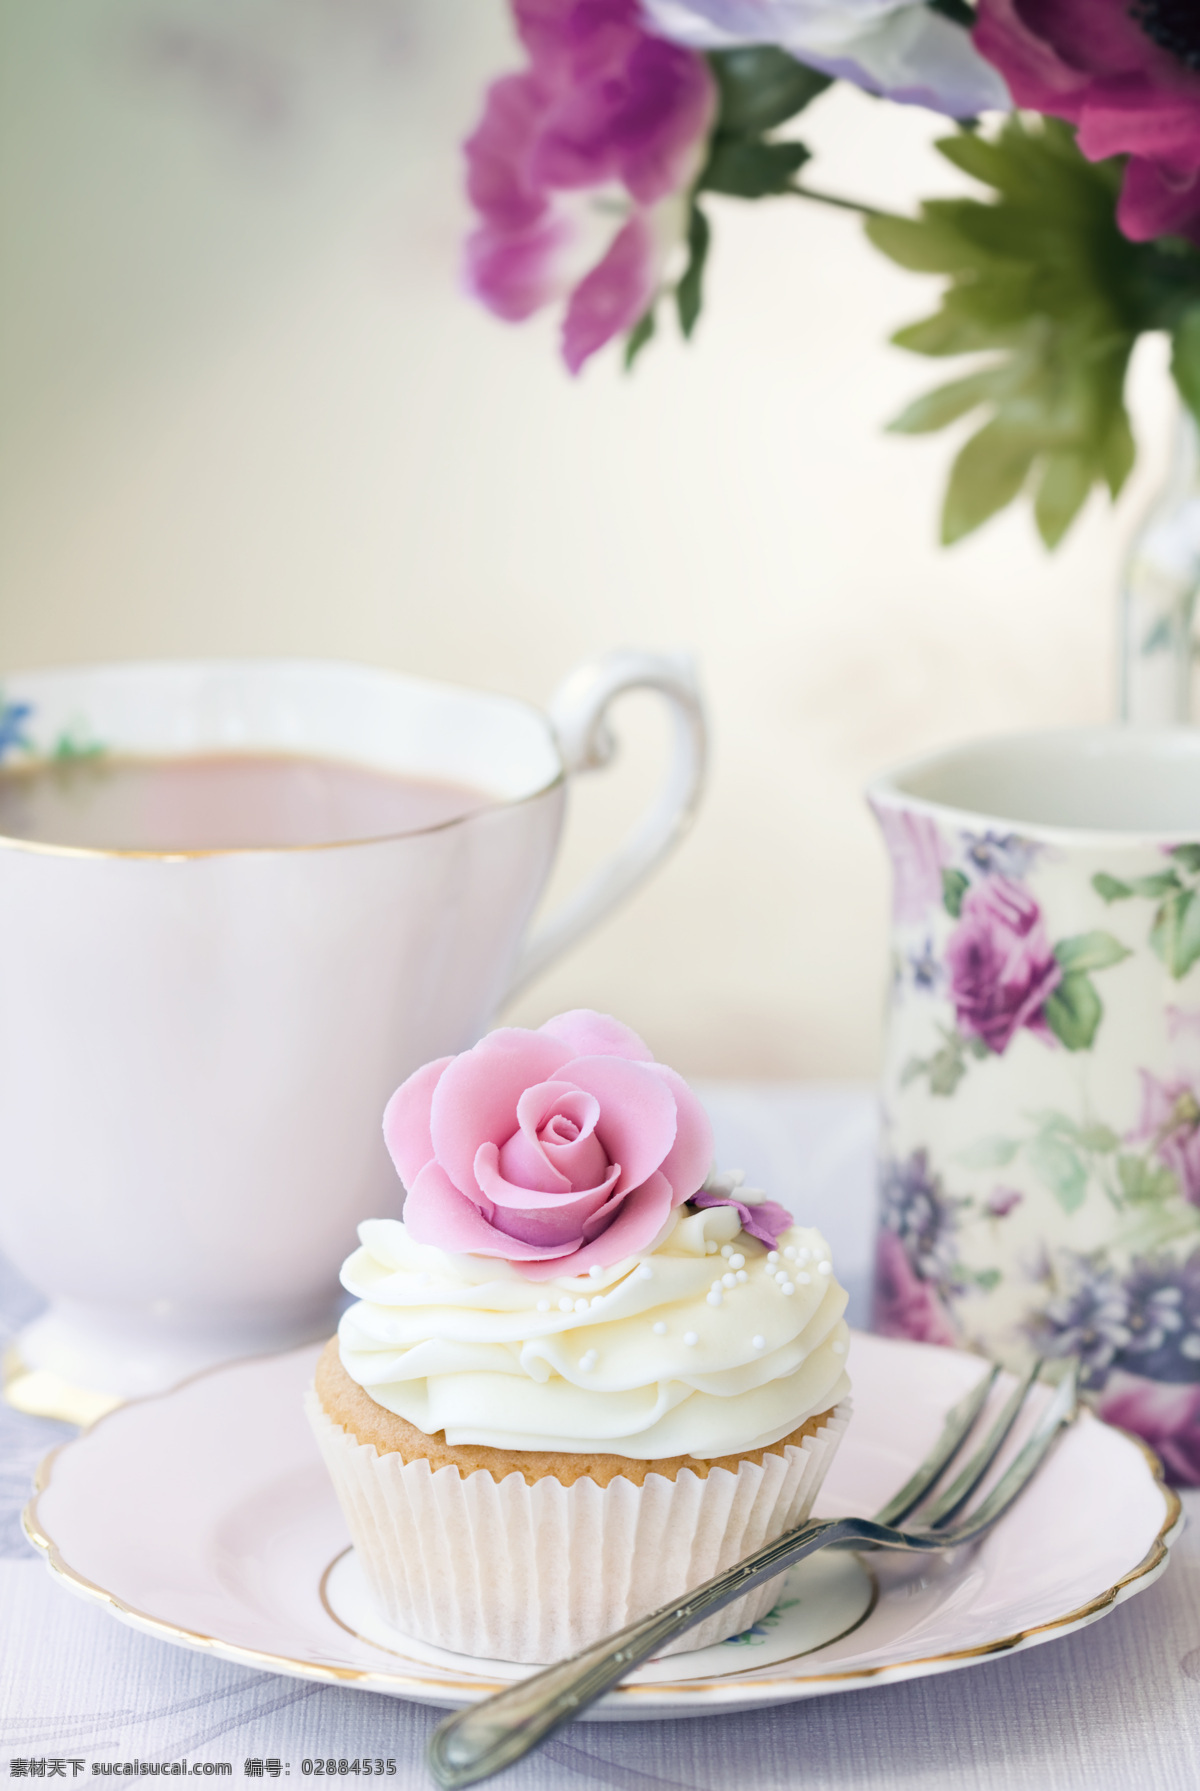 温馨 下午 茶 甜点 下午茶 咖啡 蛋糕 花朵 甜品 餐饮美食 饮料酒水